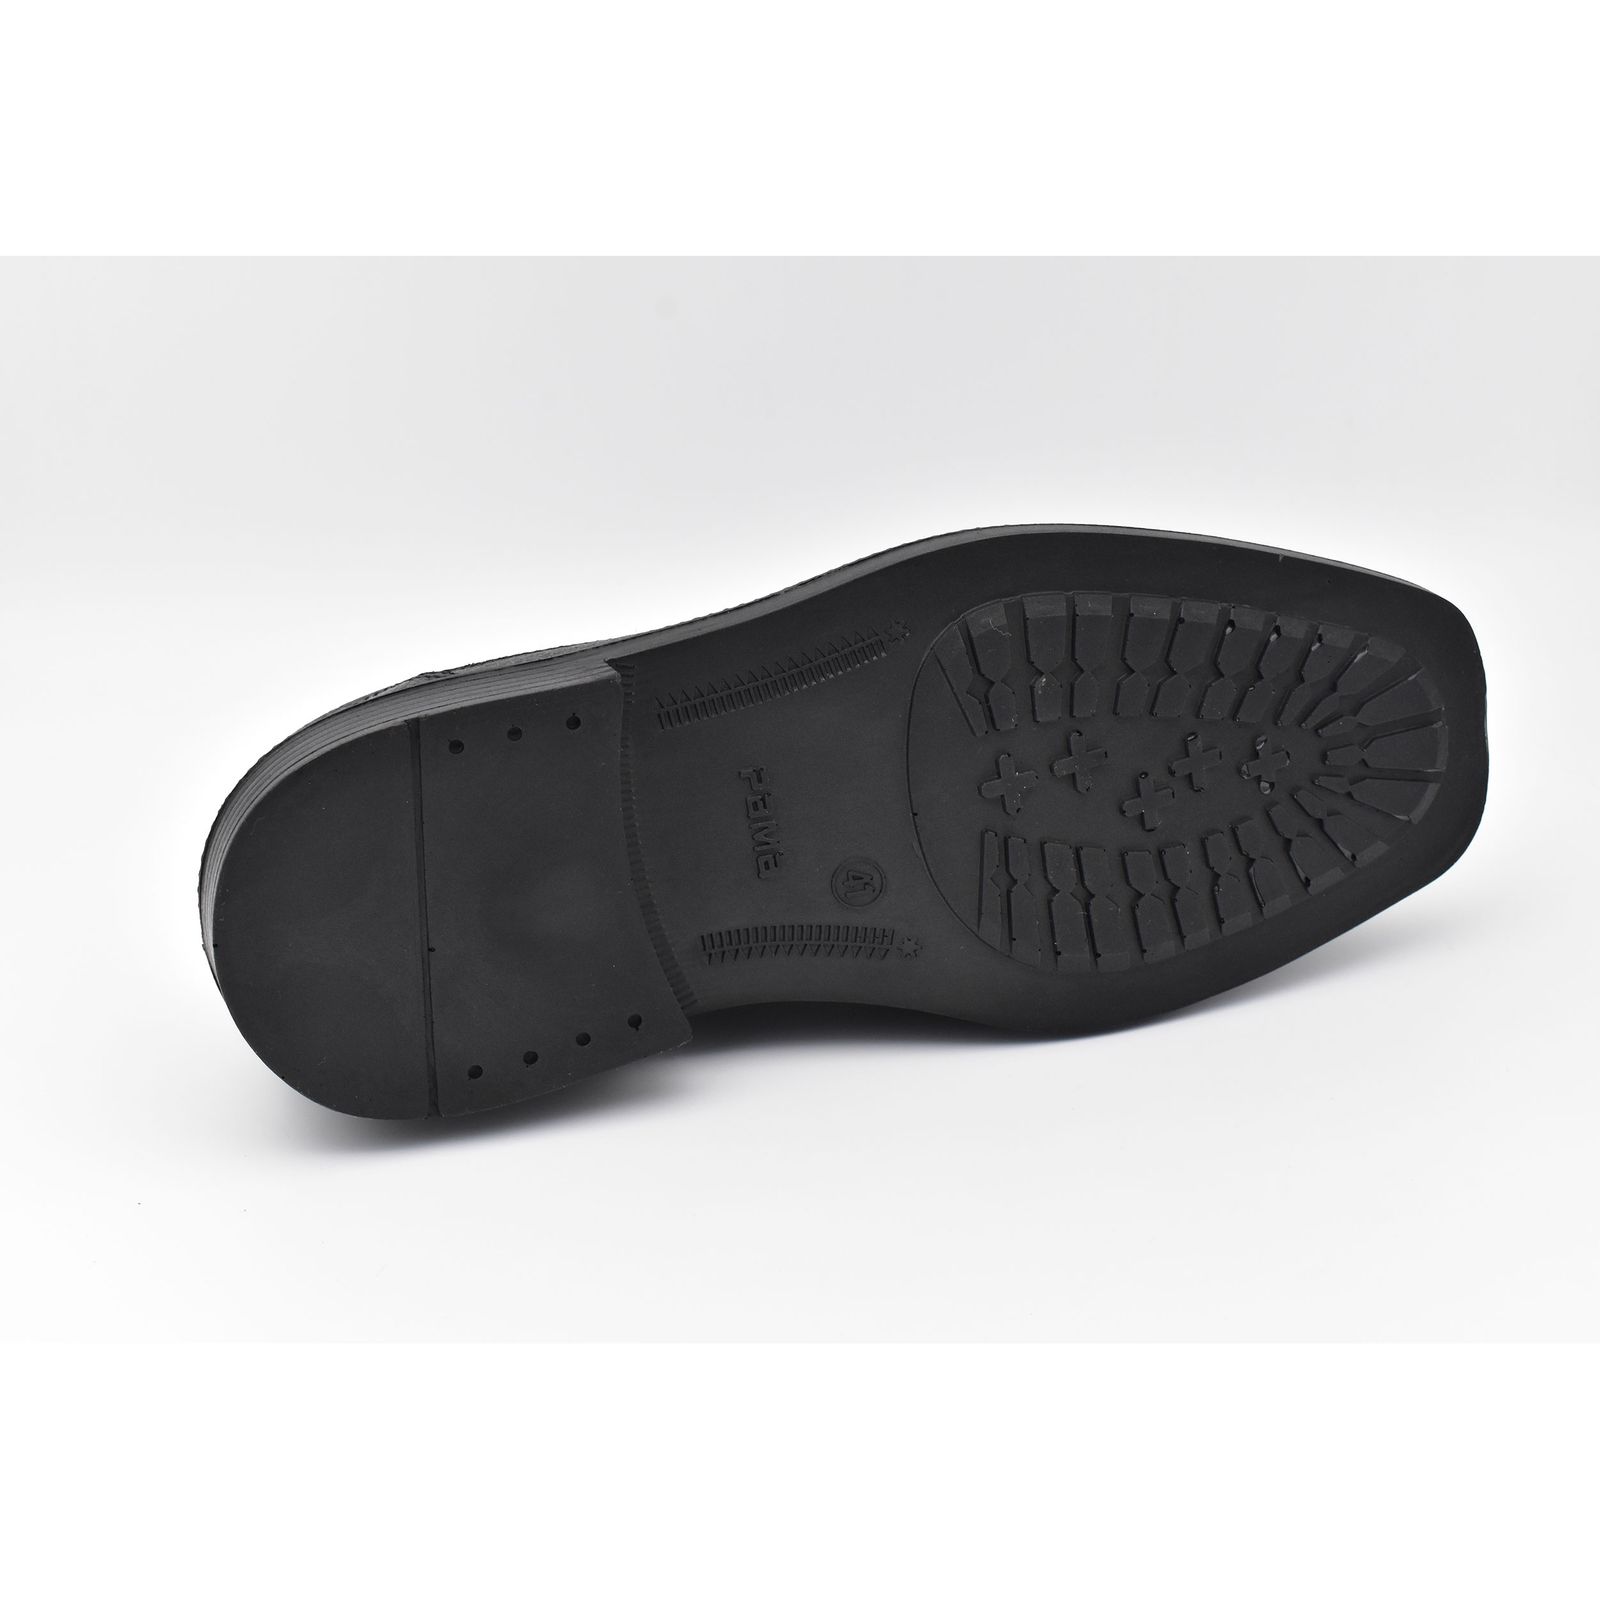 کفش مردانه پاما مدل Skit کد G1359 -  - 2